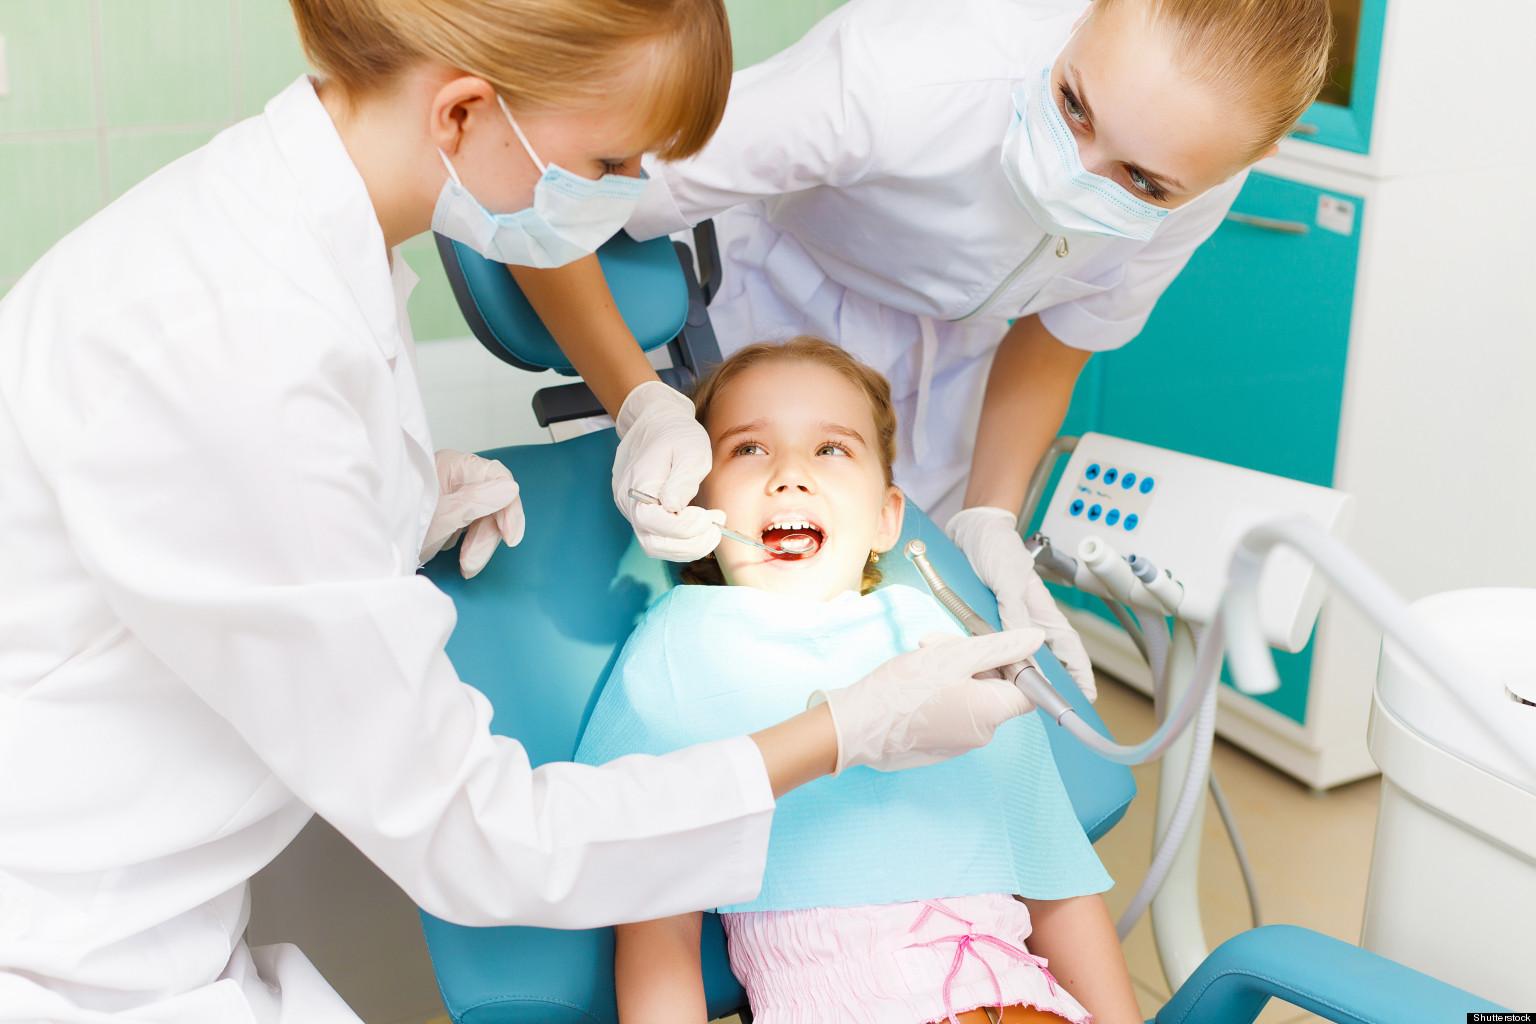 Tretman je najbolje obaviti u stomatološkoj ordinaciji - Avaz